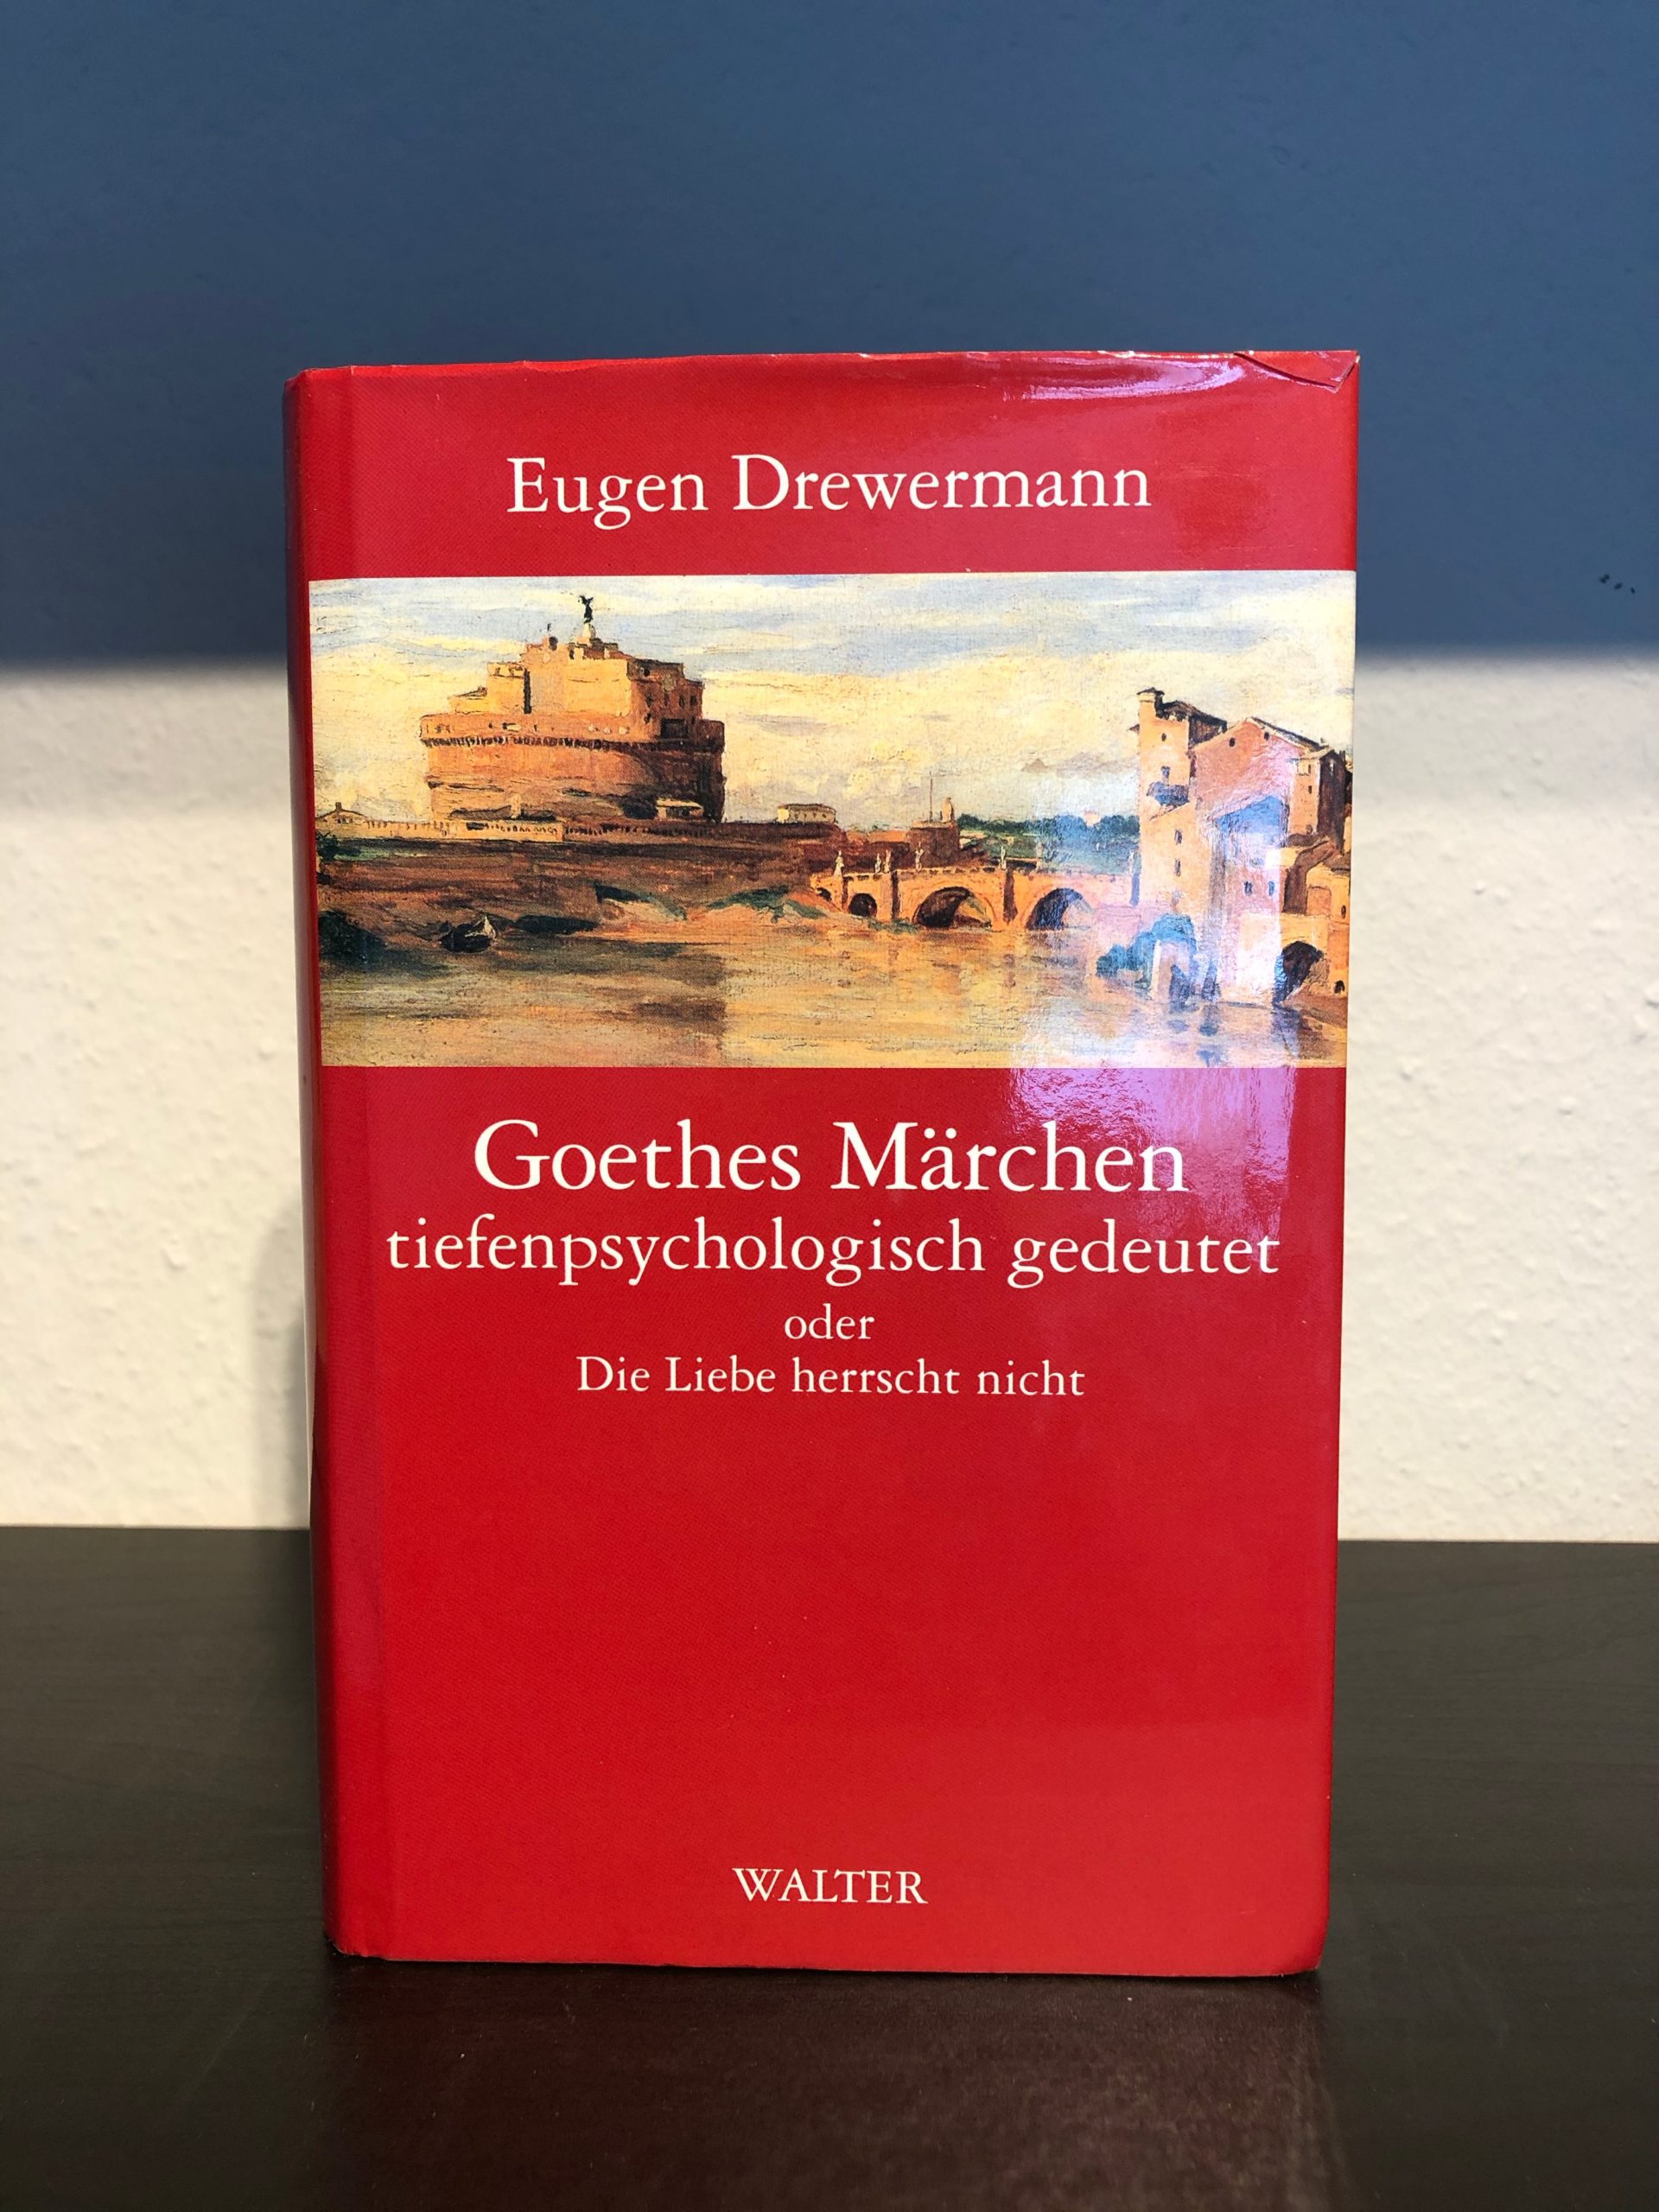 Goethes Märchen tiefenpsychologisch gedeutet - Die Liebe herrscht nicht - Eugen Drewermann